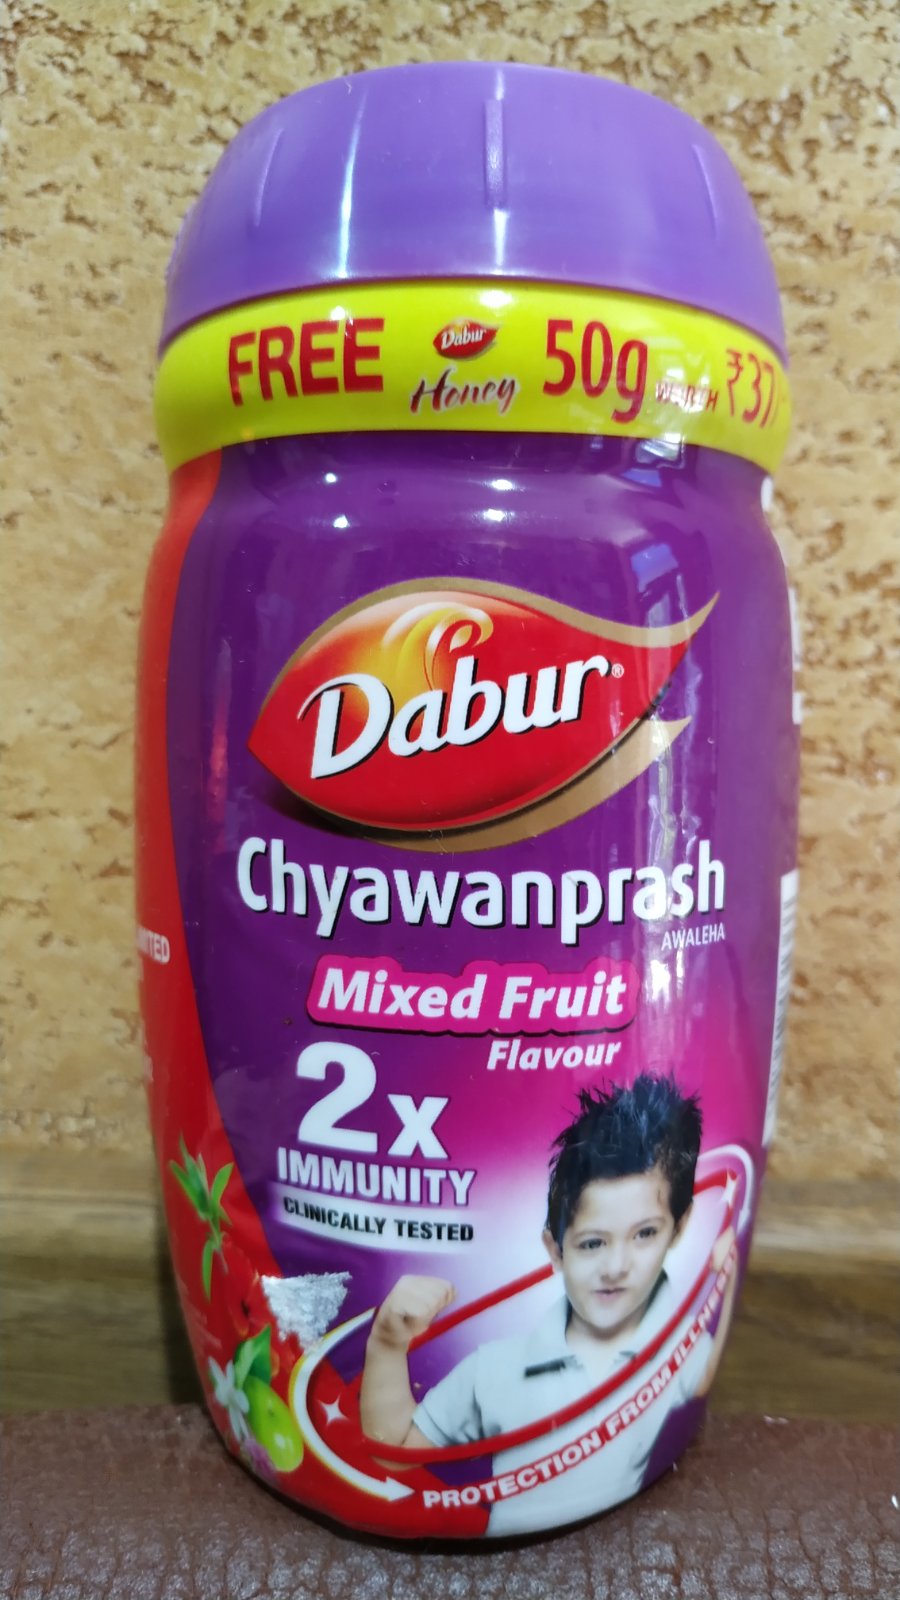 Chyawanprash MIXED FRUIT DABUR Индия Чаванпраш Микс Фрукт 500 гр Укрепление иммунитета, защитные свойства организма,энергия!